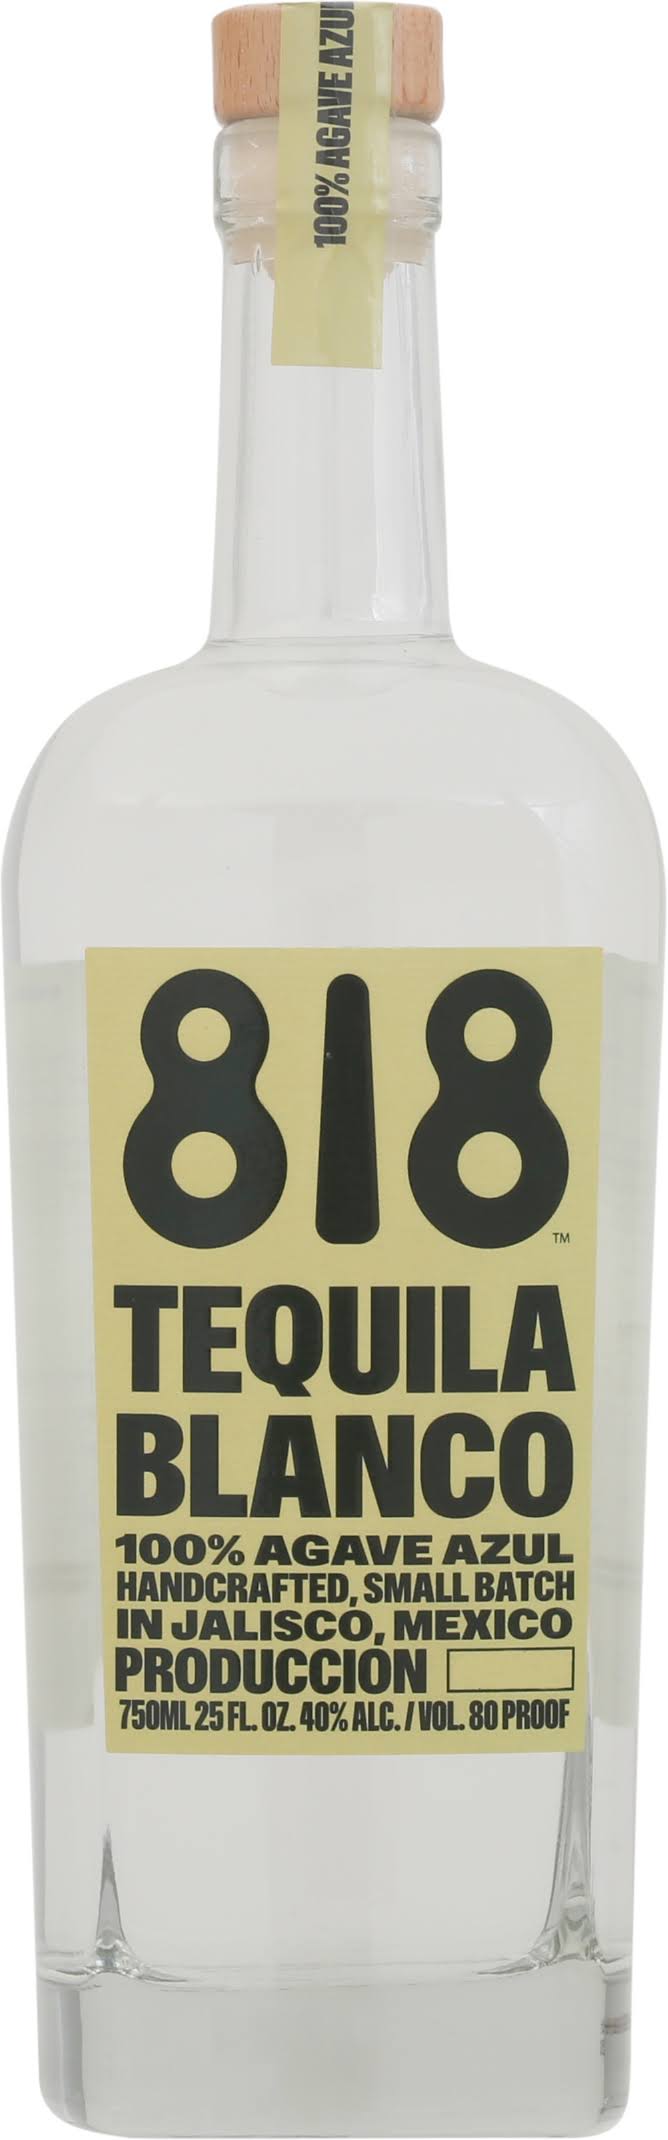 818 Tequila Blanco 750 ml bottle